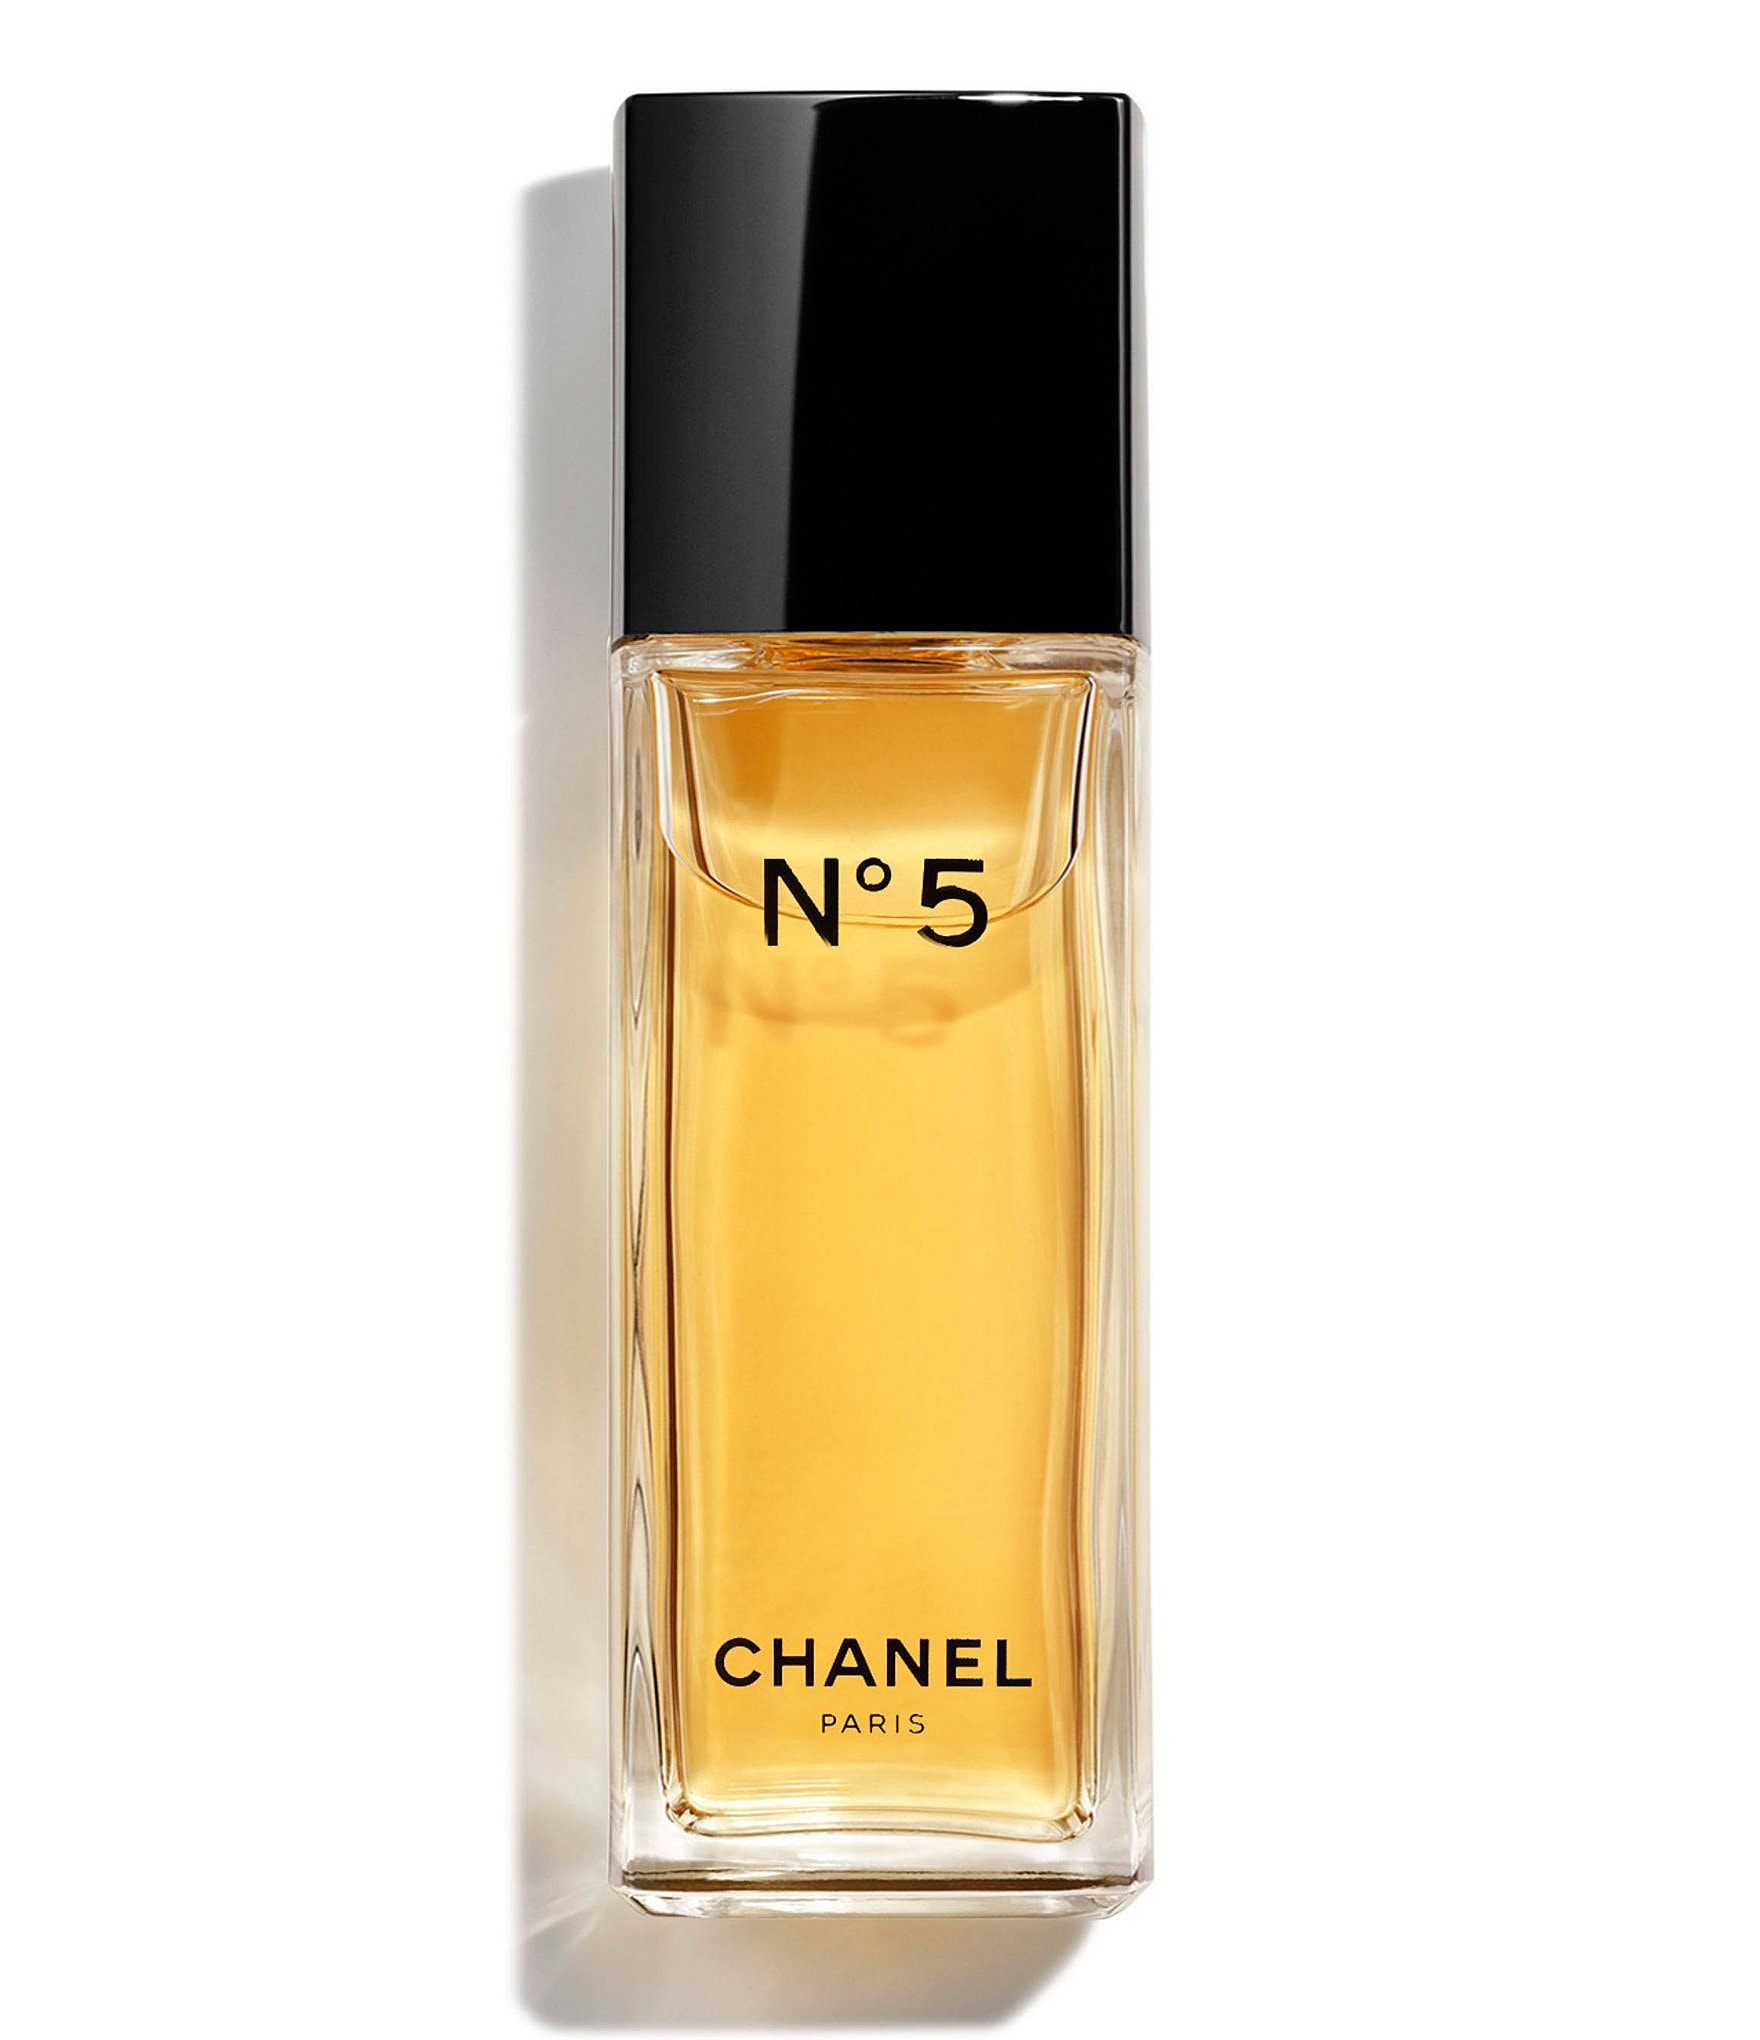 chanel perfume sampler for women